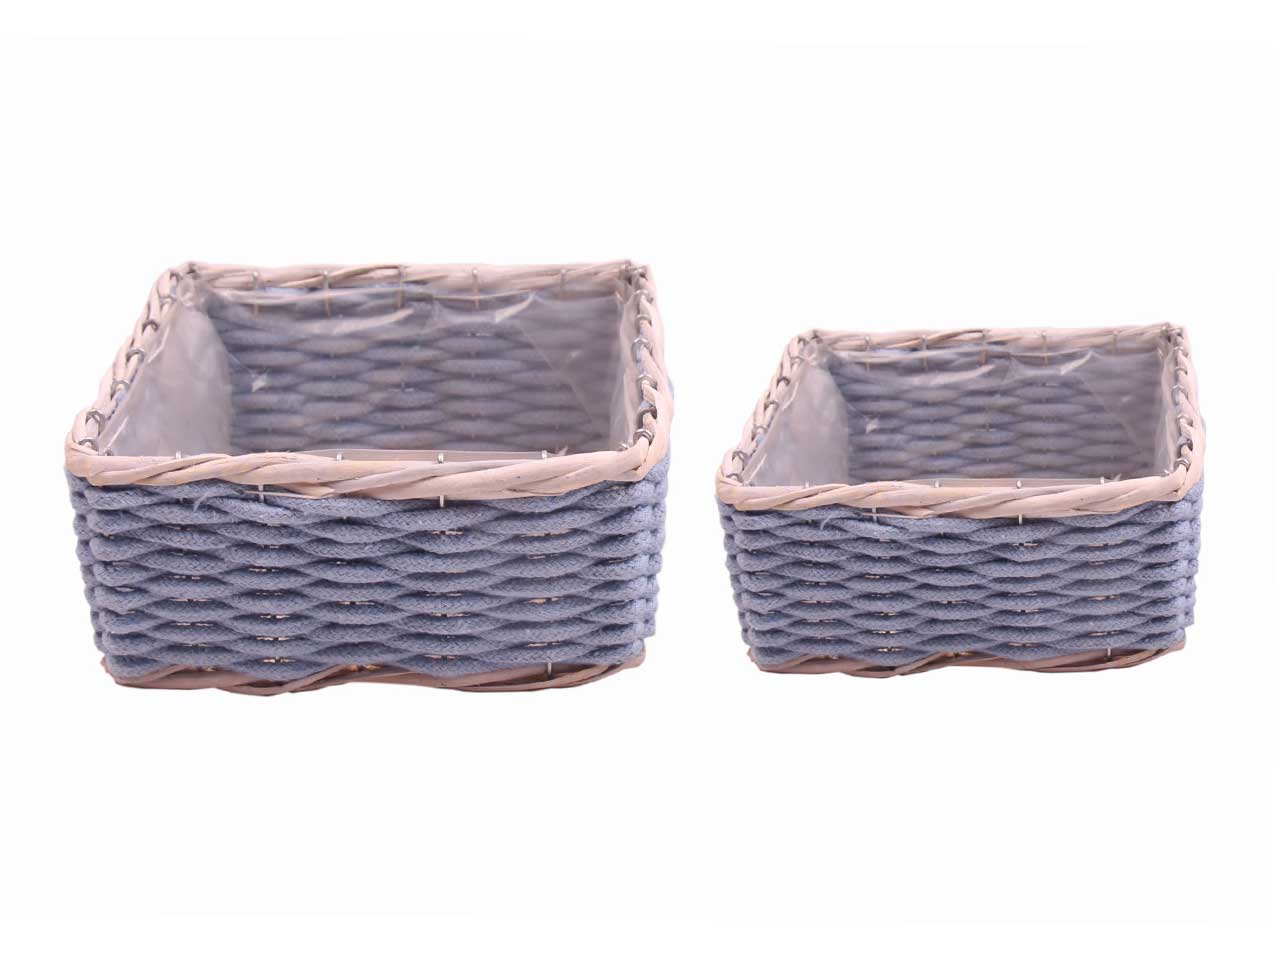 Ciotola quadra in simil lana bordo shabby colore carta zucchero 2 assortimenti piccolo 16x16xh.7 grande 21x21xh.9cm